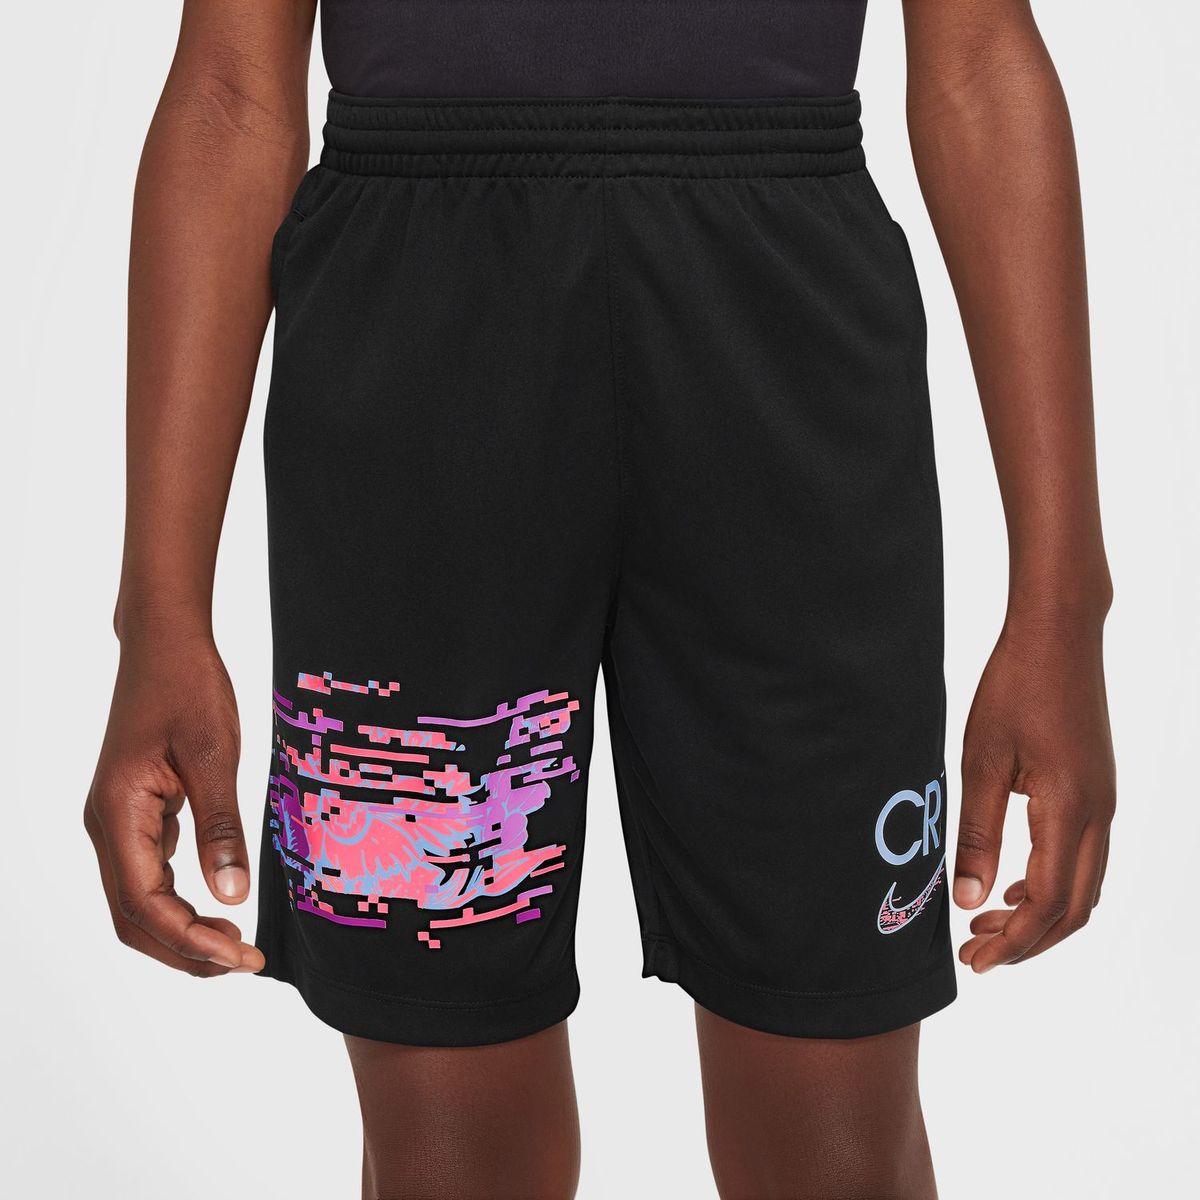 Nike CR7 Kinder Shorts